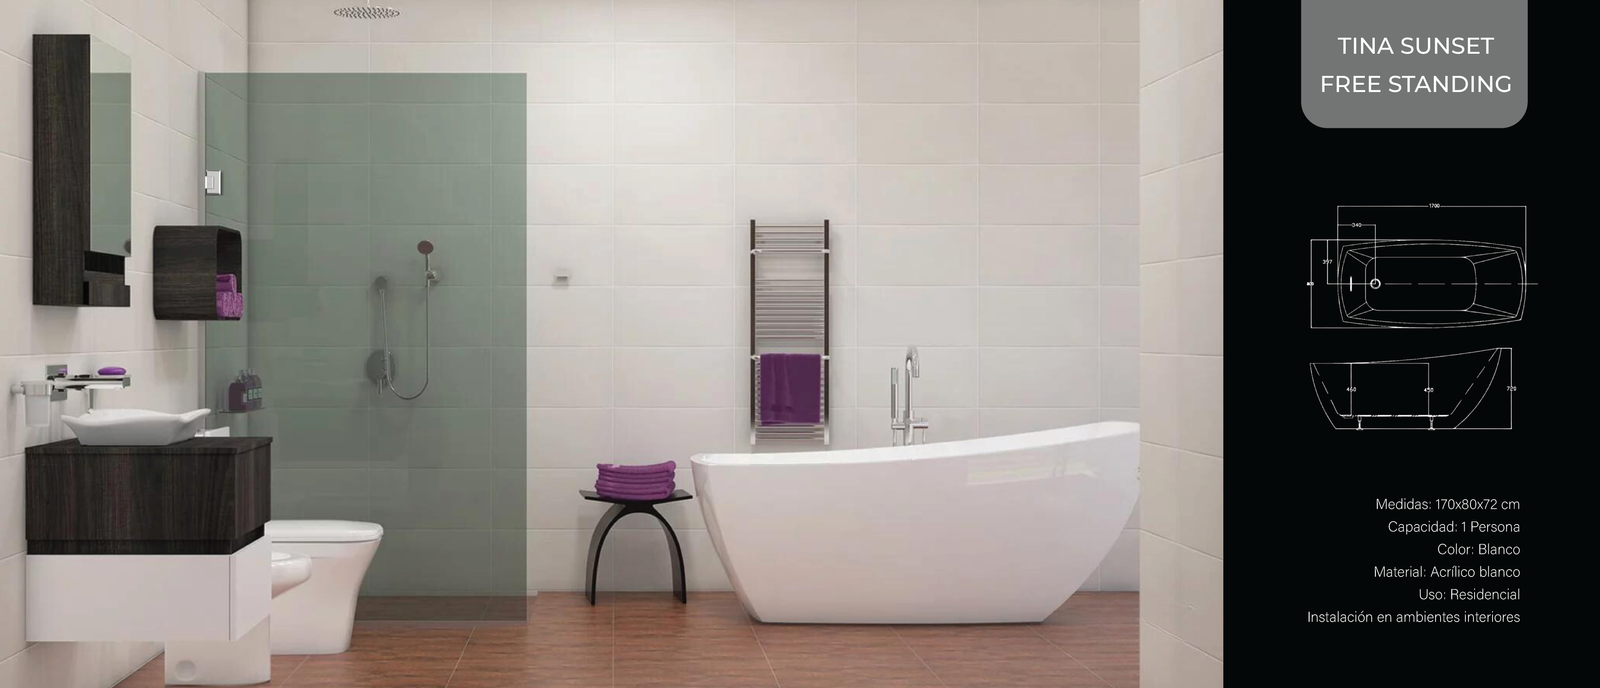 Ideas de Diseño de Bañera Free Standing junto a la ducha, SalasFV - Cerámica, Grifería, Sanitarios, Inodoros, Baños